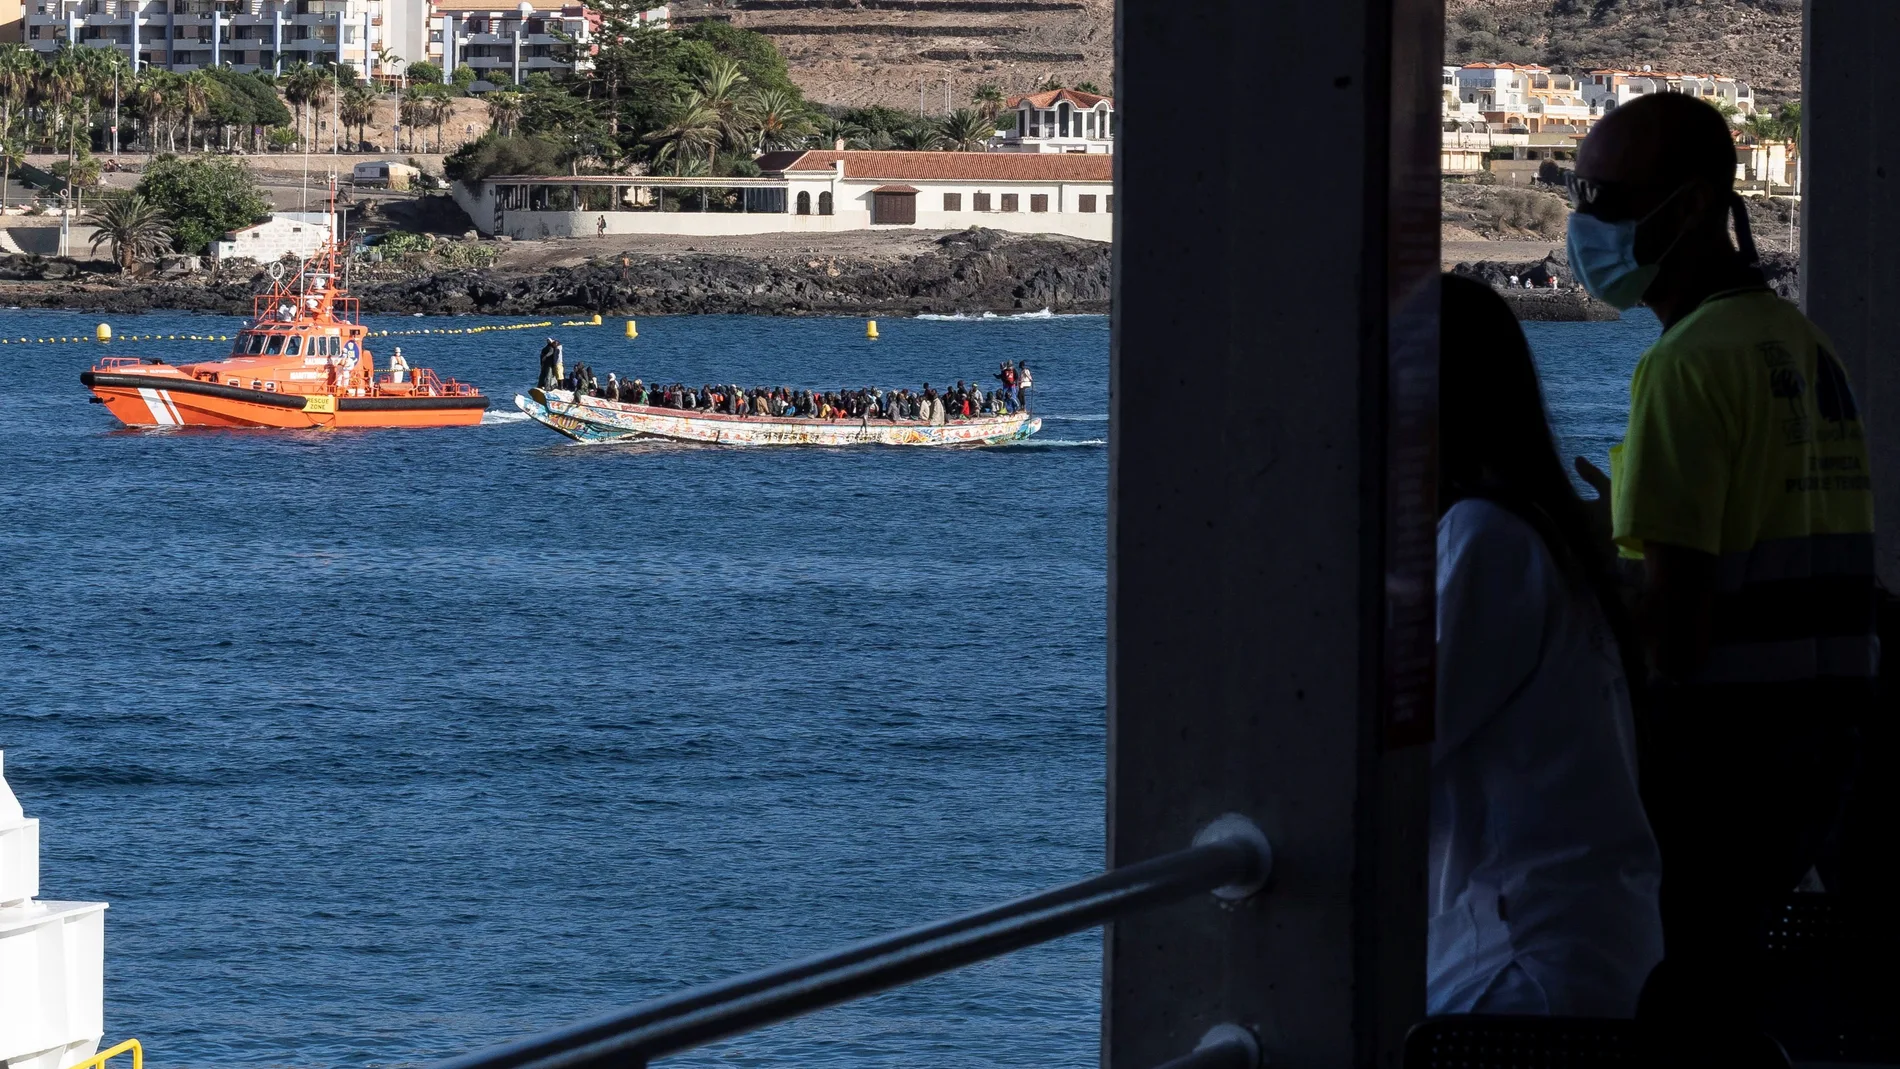 Unas 240 personas de origen subshariano arribaron este sábado a bordo de dos cayucos al puerto de los Cristianos, en el sur de la isla de Tenerife. EFE/ Miguel Barreto